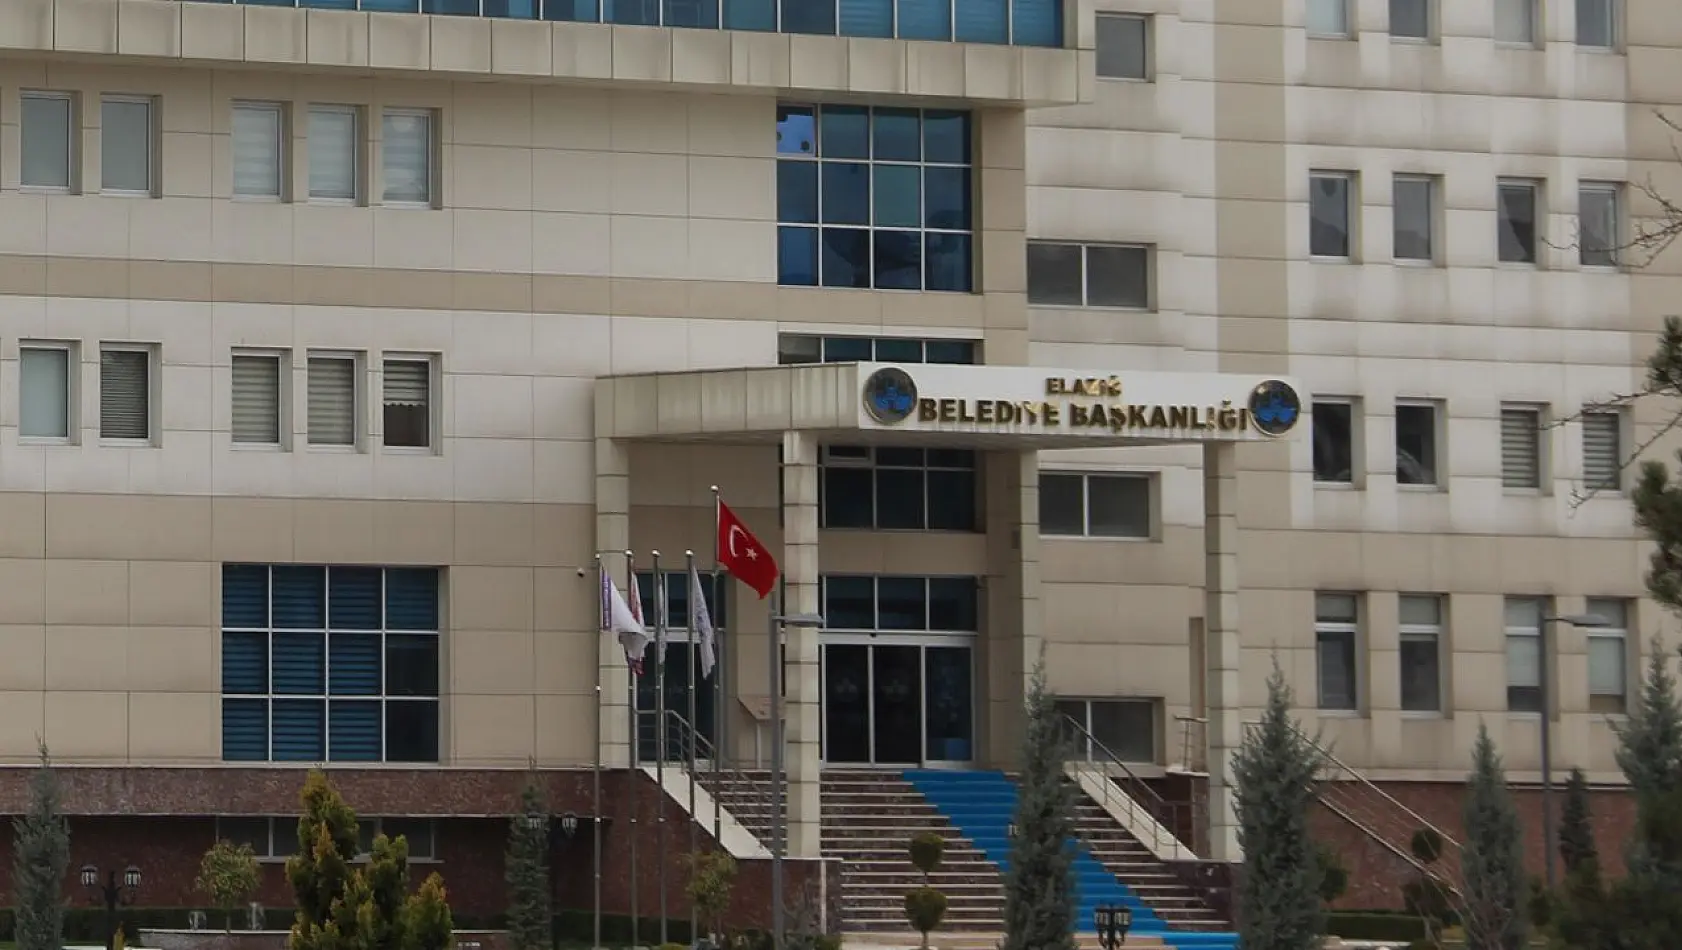 Elazığ Belediyesi'ne Alınacak 150 Geçici İşçi, 17 Nisan'da Kurayla Belirlenecek